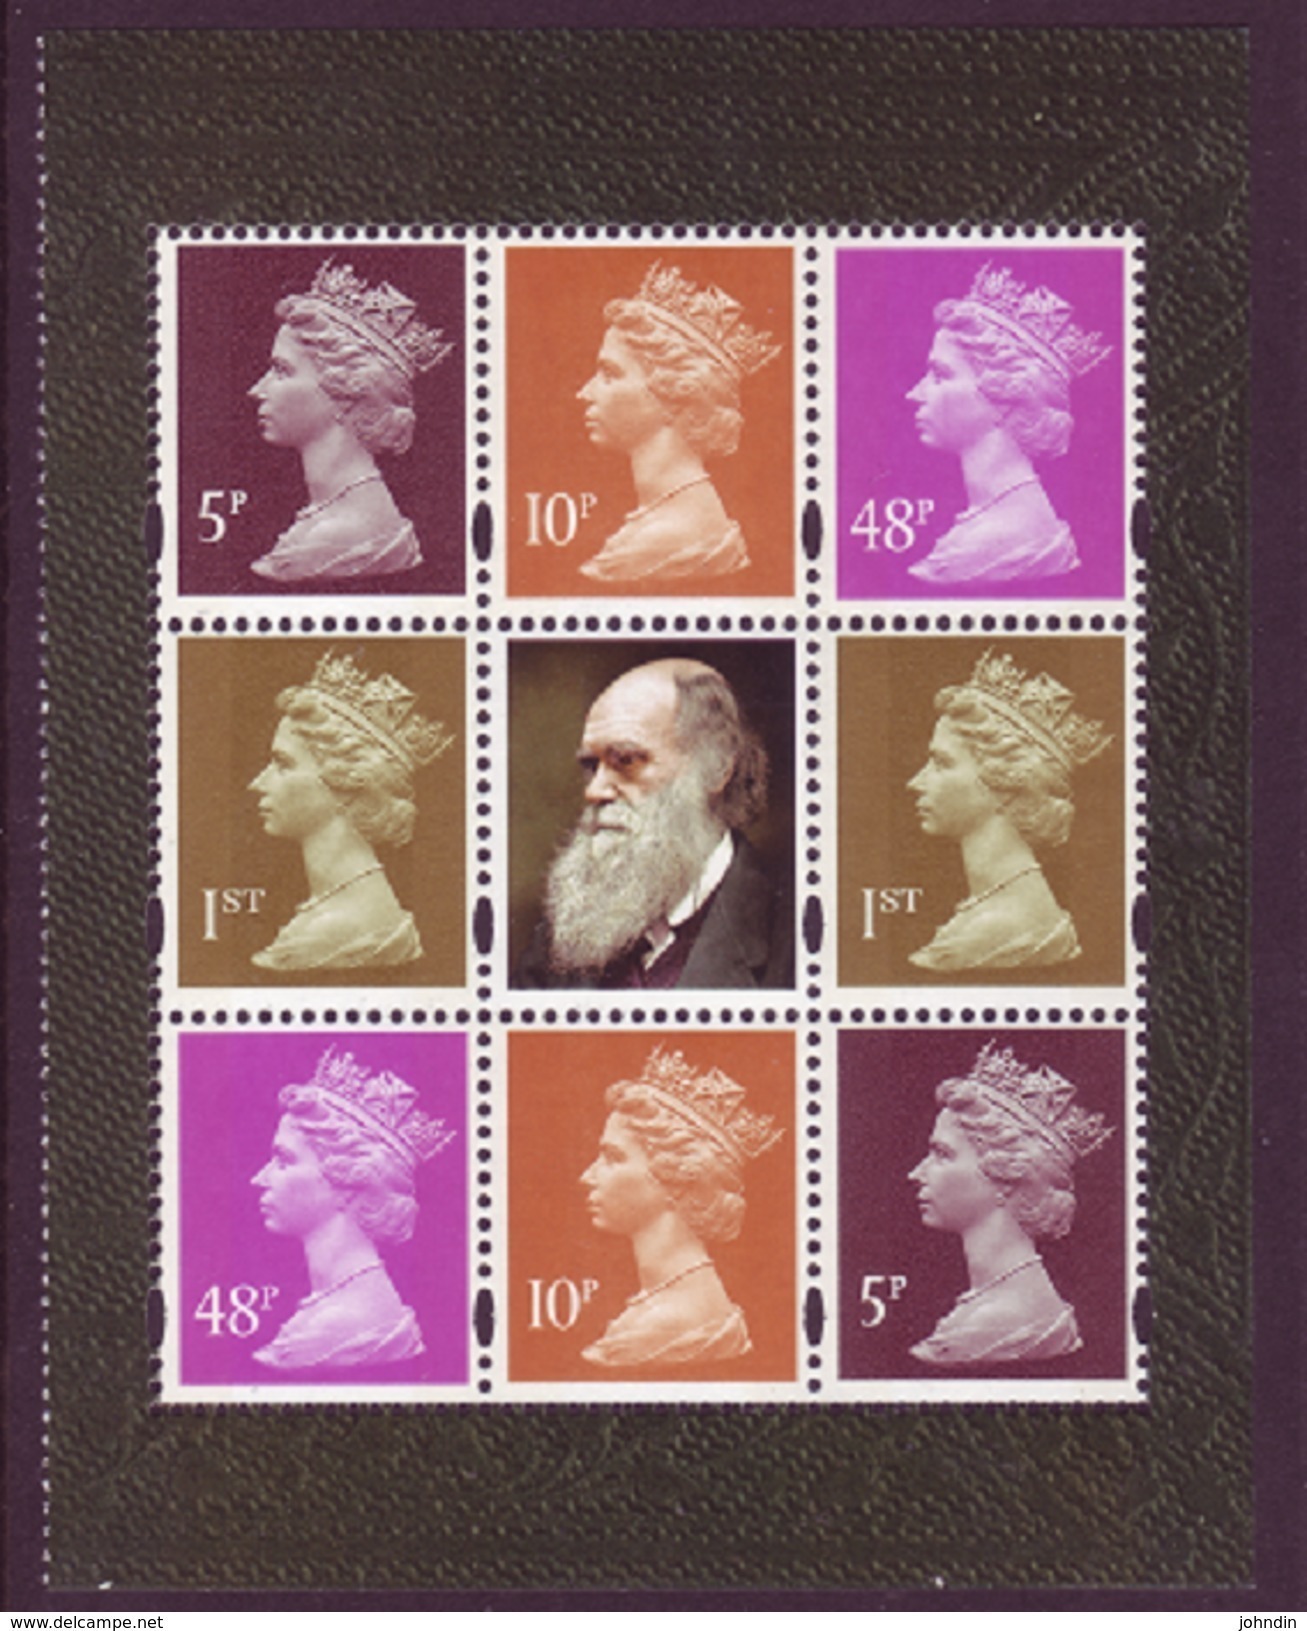 GB 2009 Machin Stamps Block From Charles Darwin Booklet Pane SG Y1762L UM/ MNH - Machin-Ausgaben